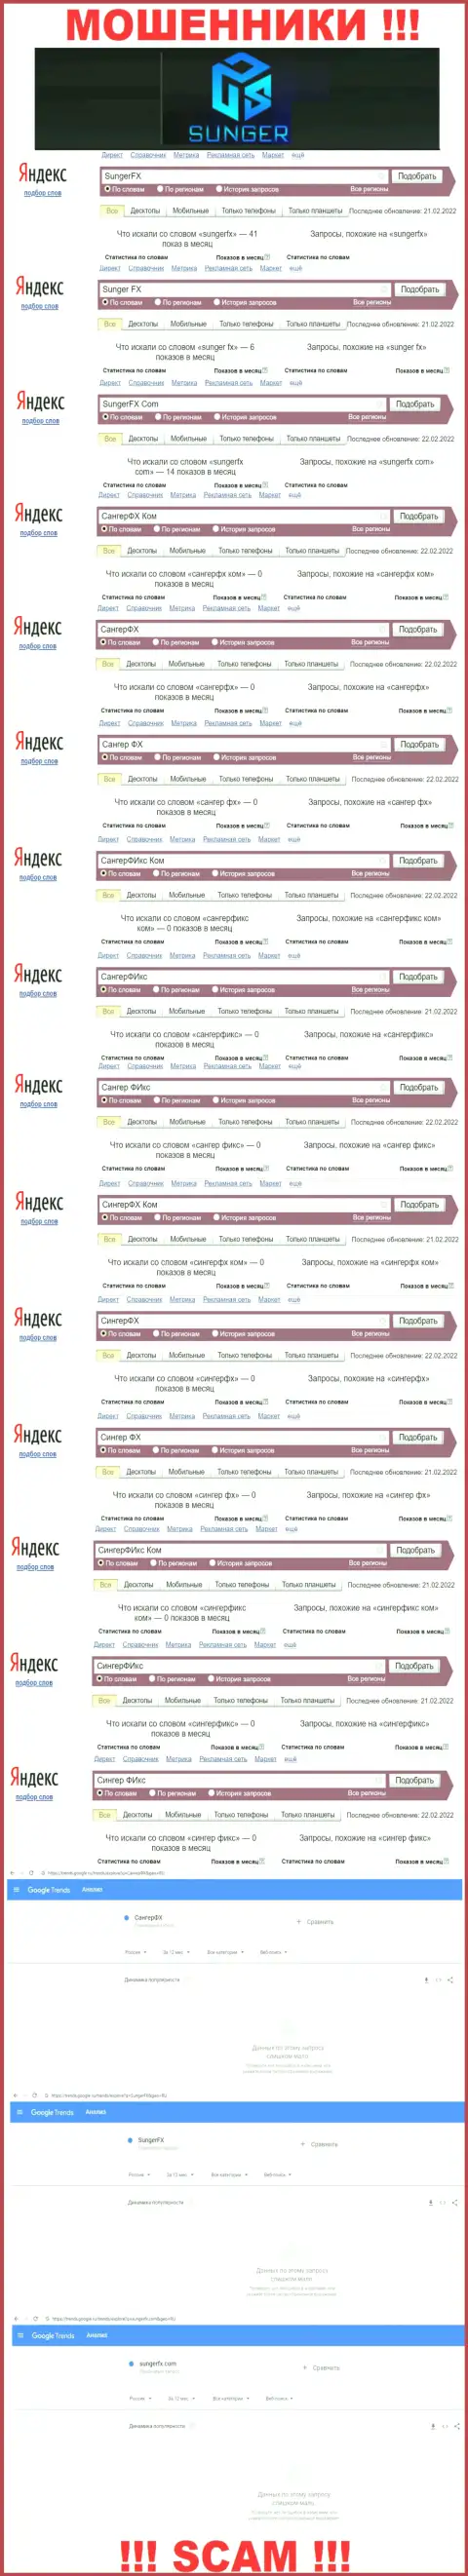 SungerFX - это МОШЕННИКИ, сколько именно раз искали в поисковиках сети данную компанию